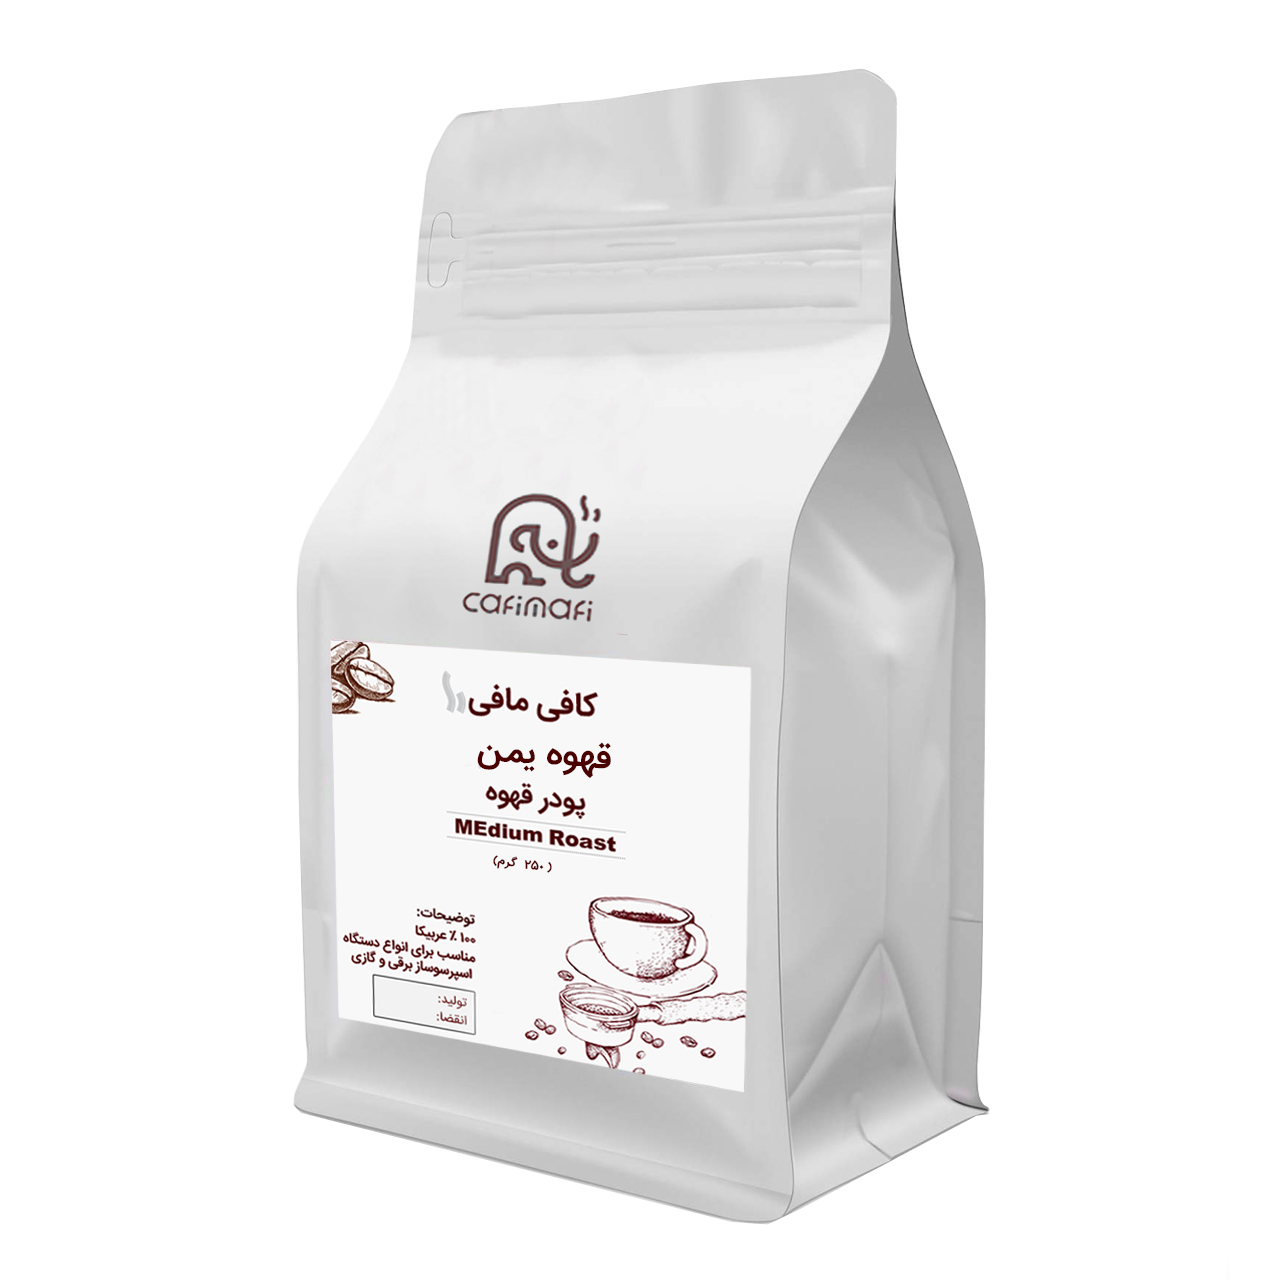  پودر قهوه یمن کافی مافی - 250 گرم